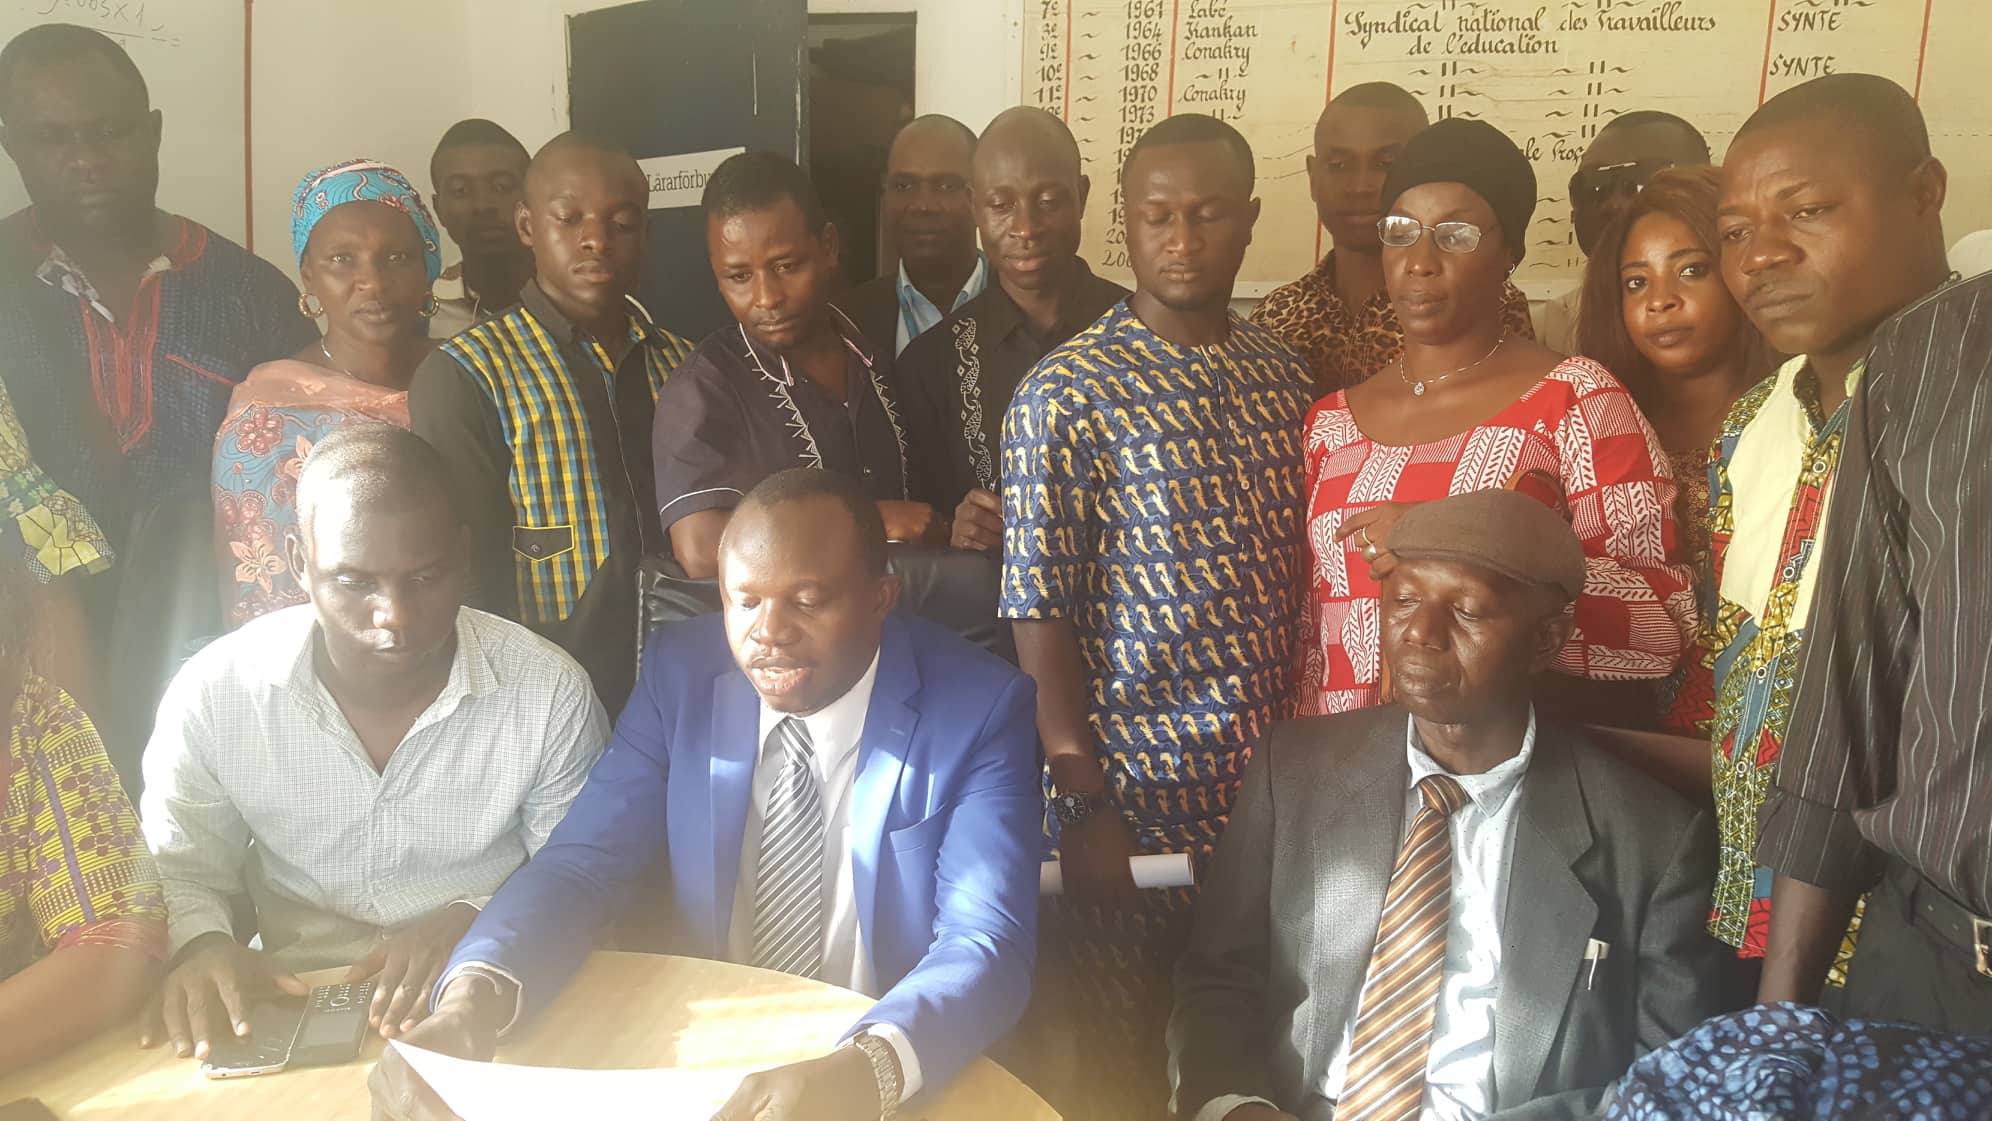 Des syndicalistes guinéens réunis à la bourse du travail